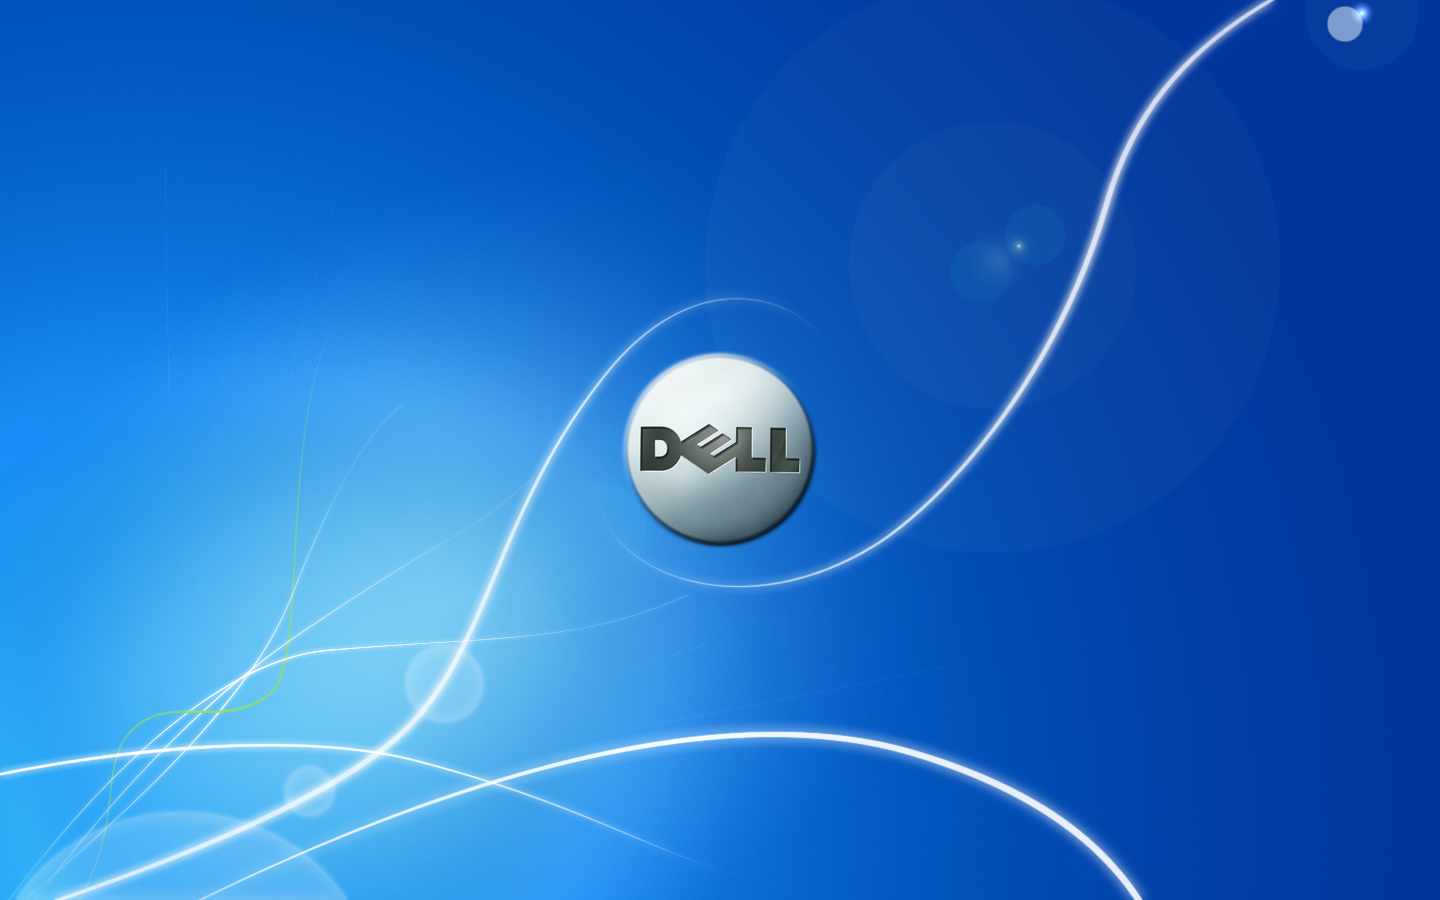 Hình nền Dell độ phân giải cao sẽ khiến cho màn hình máy tính của bạn trở nên rực rỡ và chân thực hơn bao giờ hết. Với những đường nét tinh tế và màu sắc tương phản đầy sáng tạo, hình nền này sẽ làm bạn không thể rời mắt khỏi màn hình. Hãy tải về ngay hôm nay để trải nghiệm sự khác biệt!